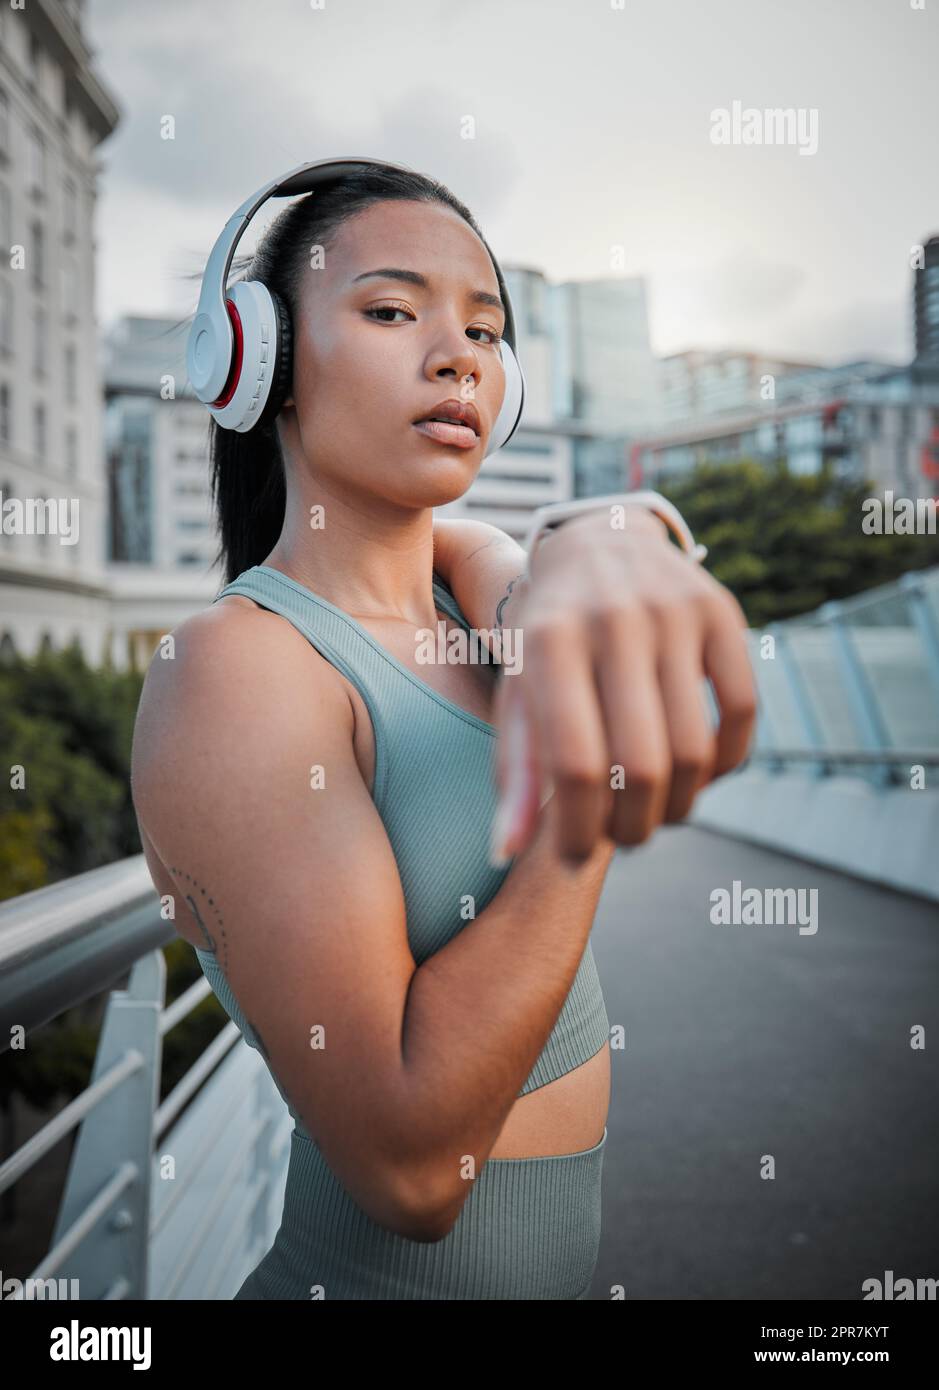 Giovane atleta femminile che indossa cuffie e ascolta musica mentre allunga i muscoli prima di una corsa all'aperto in città. Riscaldarsi prima di fare esercizio fisico per migliorare la sua salute e il suo stile di vita Foto Stock